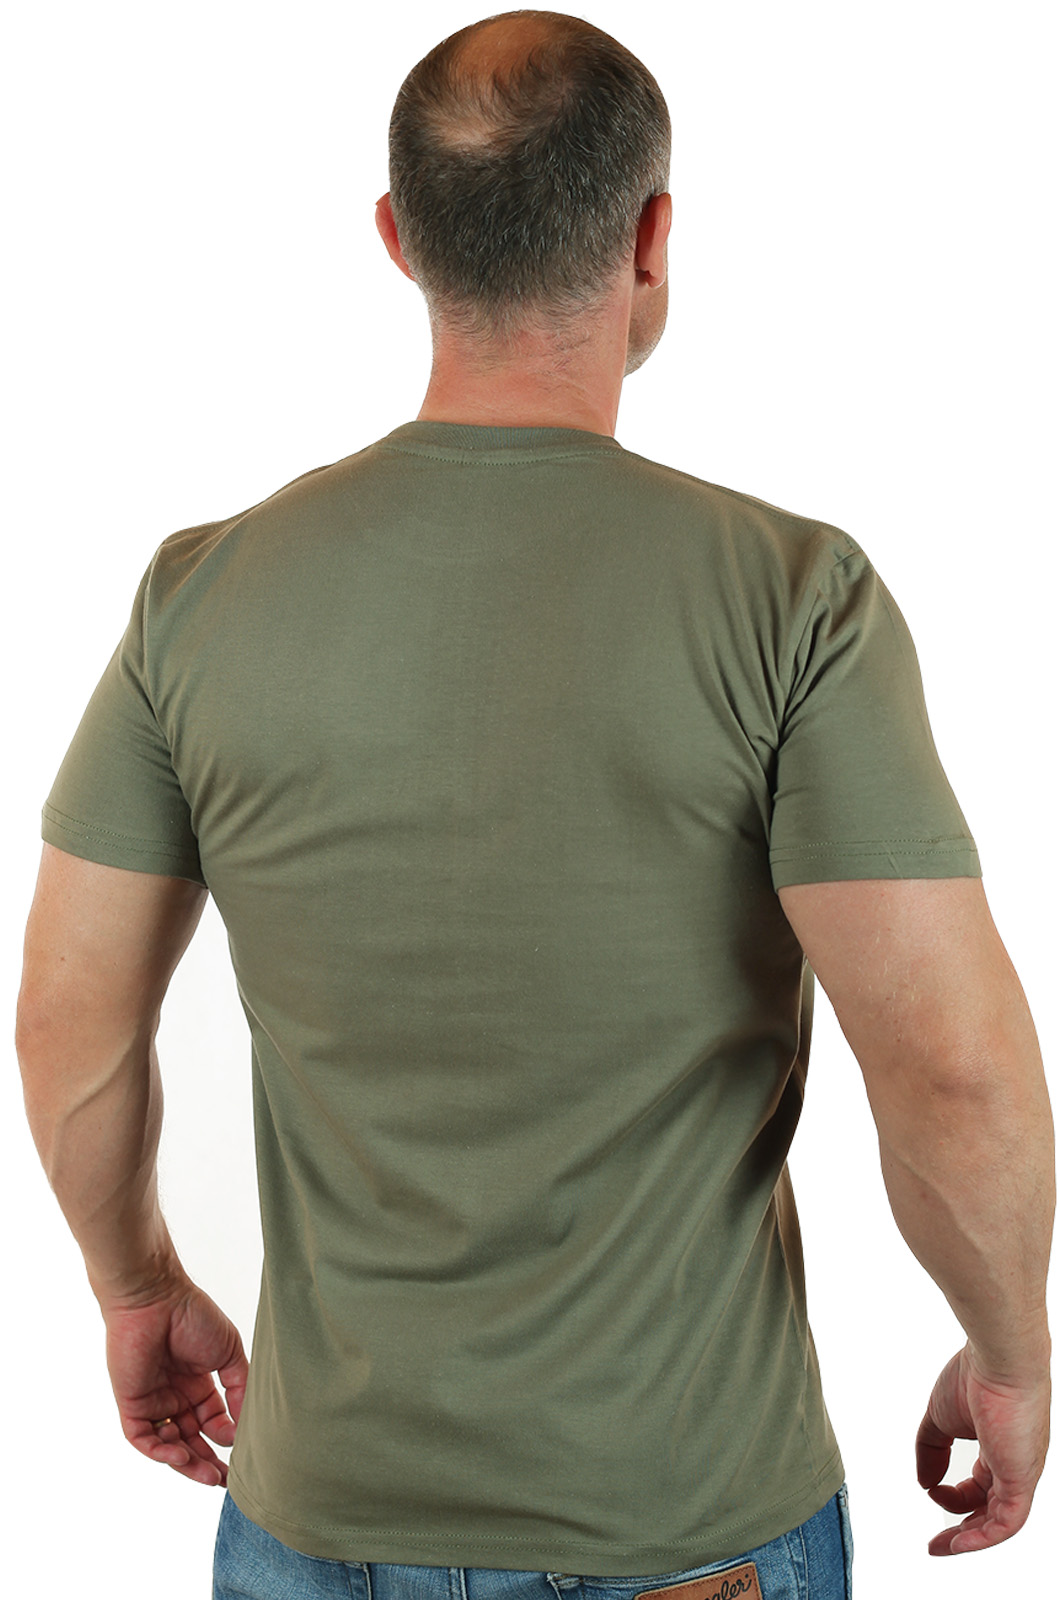 Оливковая футболка с эмблемой Военной Разведки. 